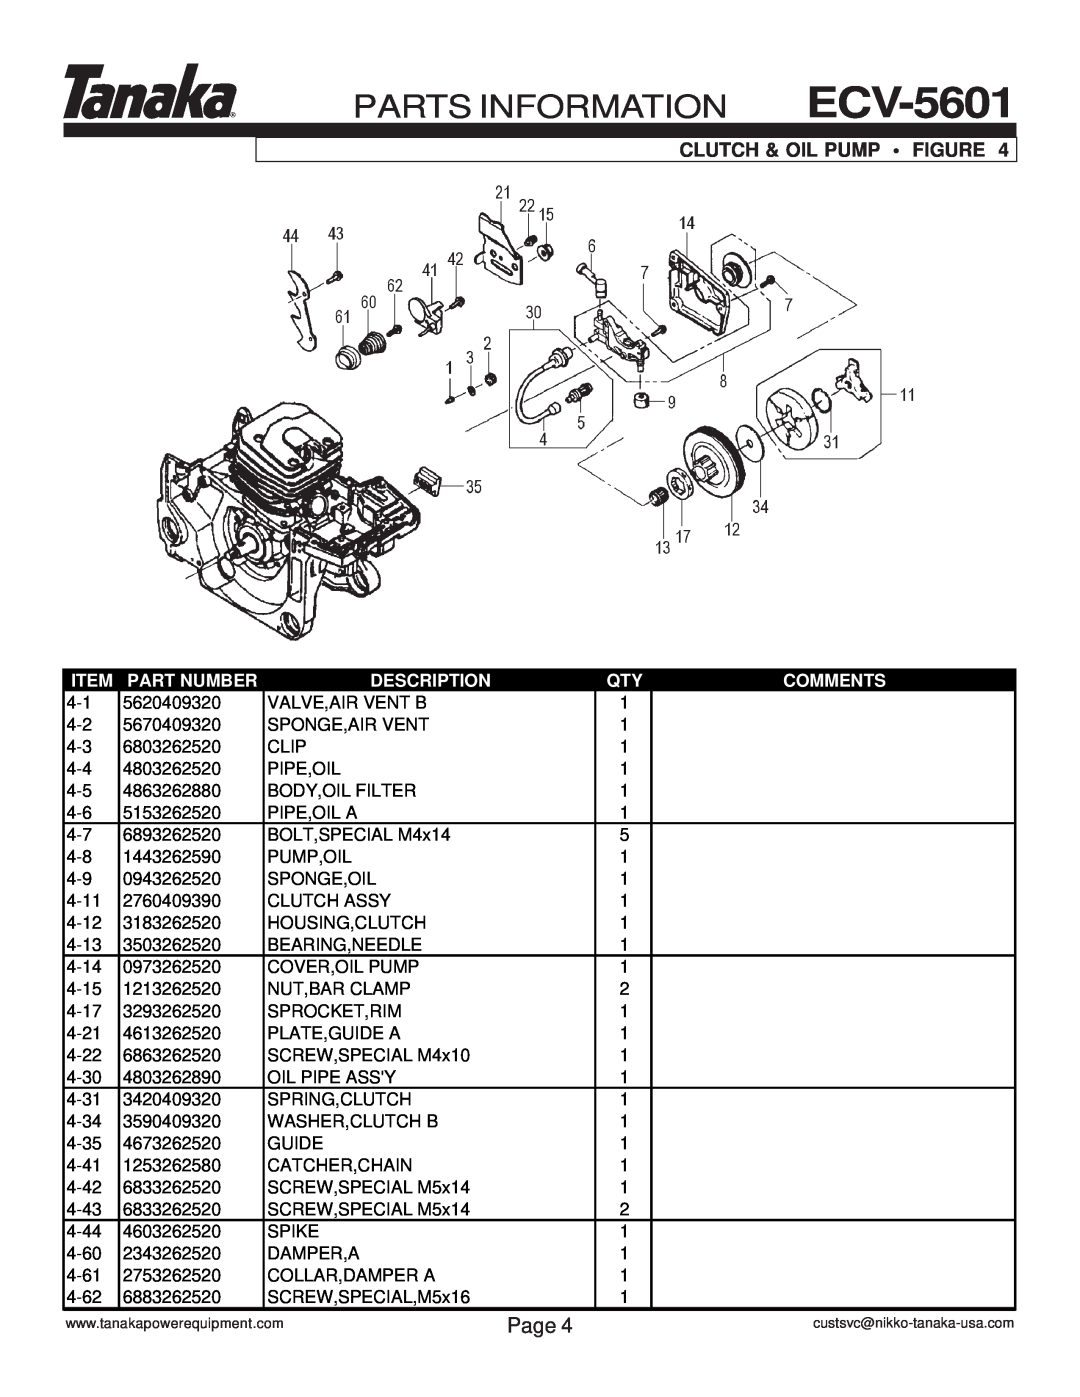 Tanaka manual Clutch & Oil Pump Figure, PARTS INFORMATION ECV-5601, Page, Part Number, Description, Comments 